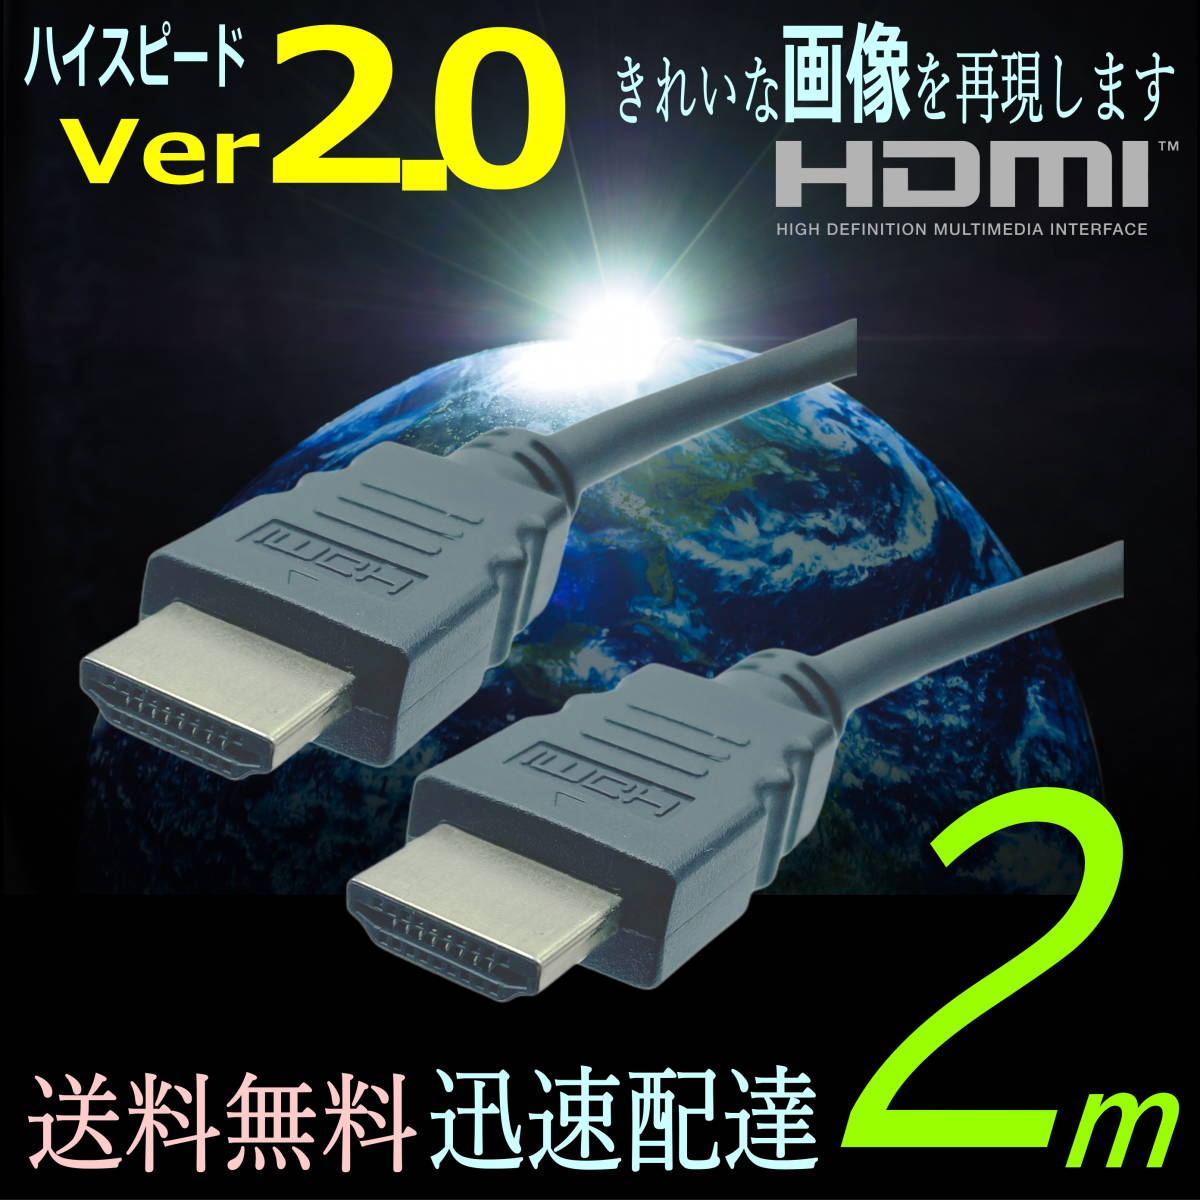 ◇HDMIケーブル 2m プレミアム高速 Ver2.0 4KフルHD 3D 60fps ネットワーク 対応 2HDMI-20 【送料無料】◆■